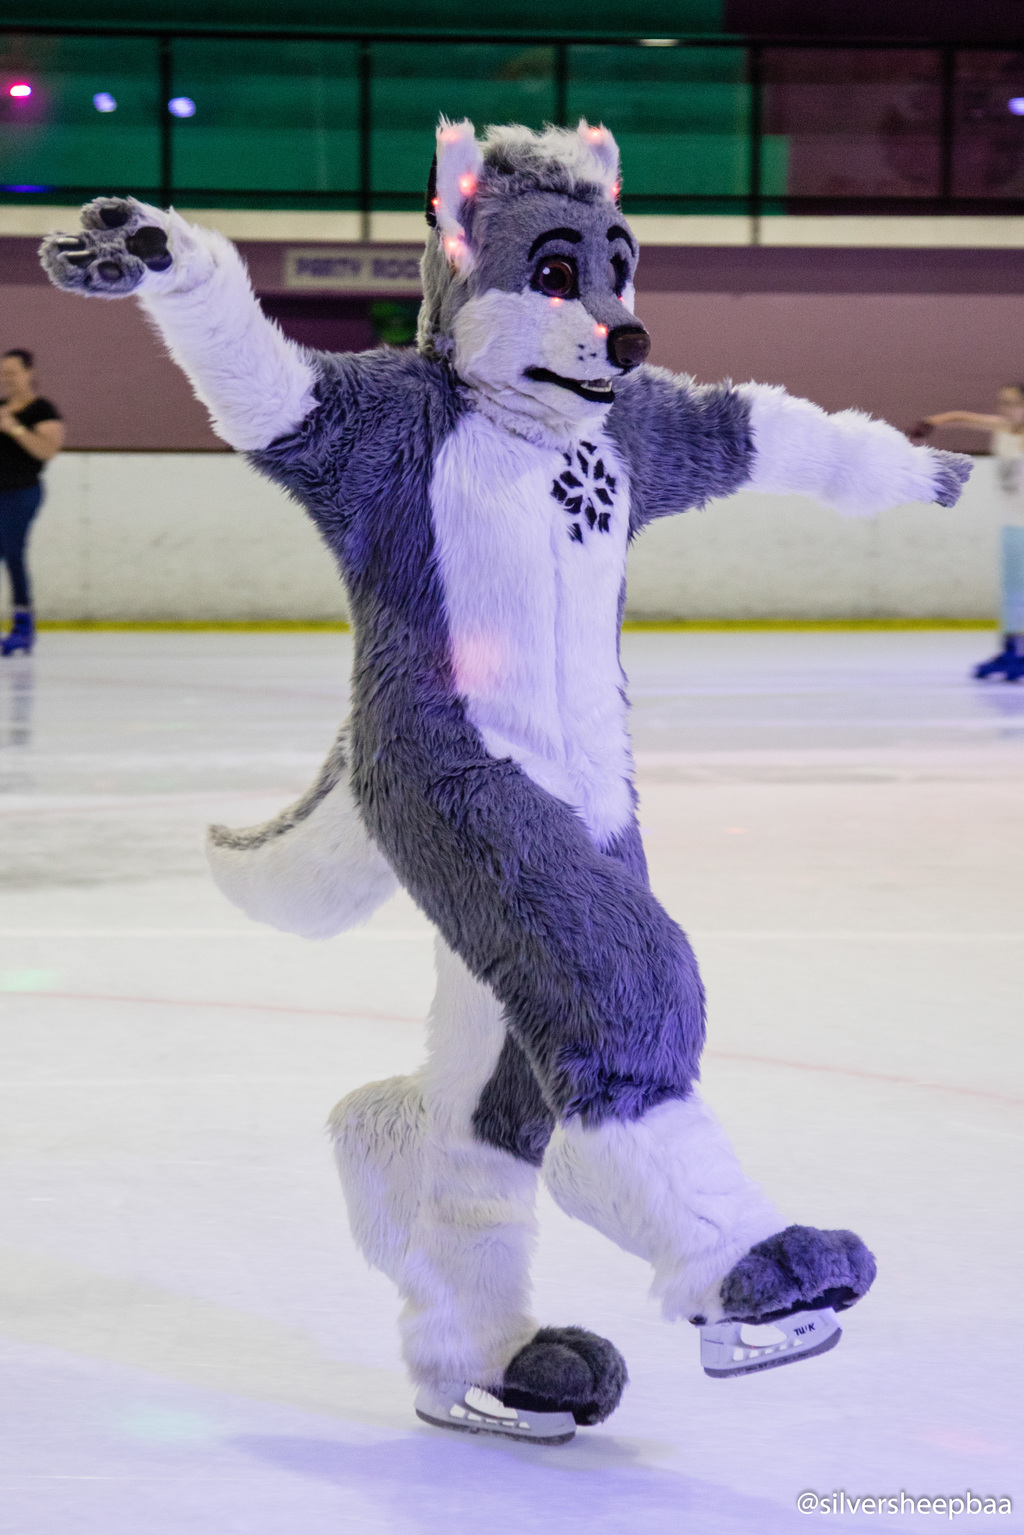 Furries on Ice 2017: Pro Husky Ice Skating Skills